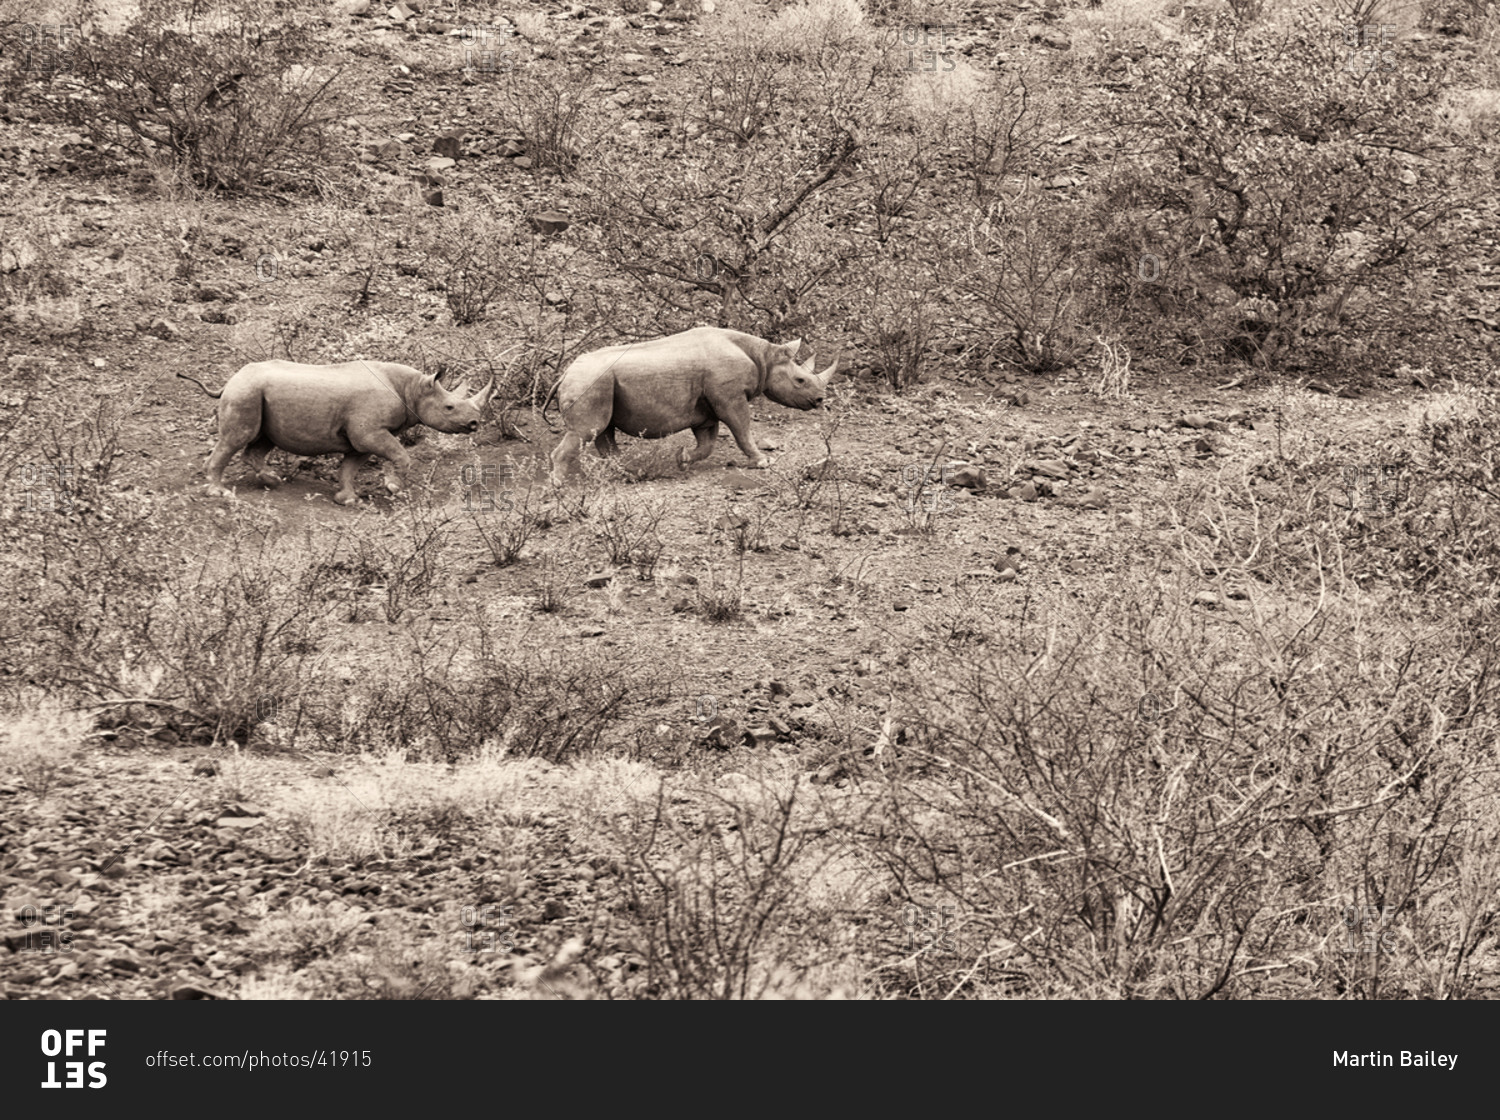 Two Black Rhinos roaming in Namibia